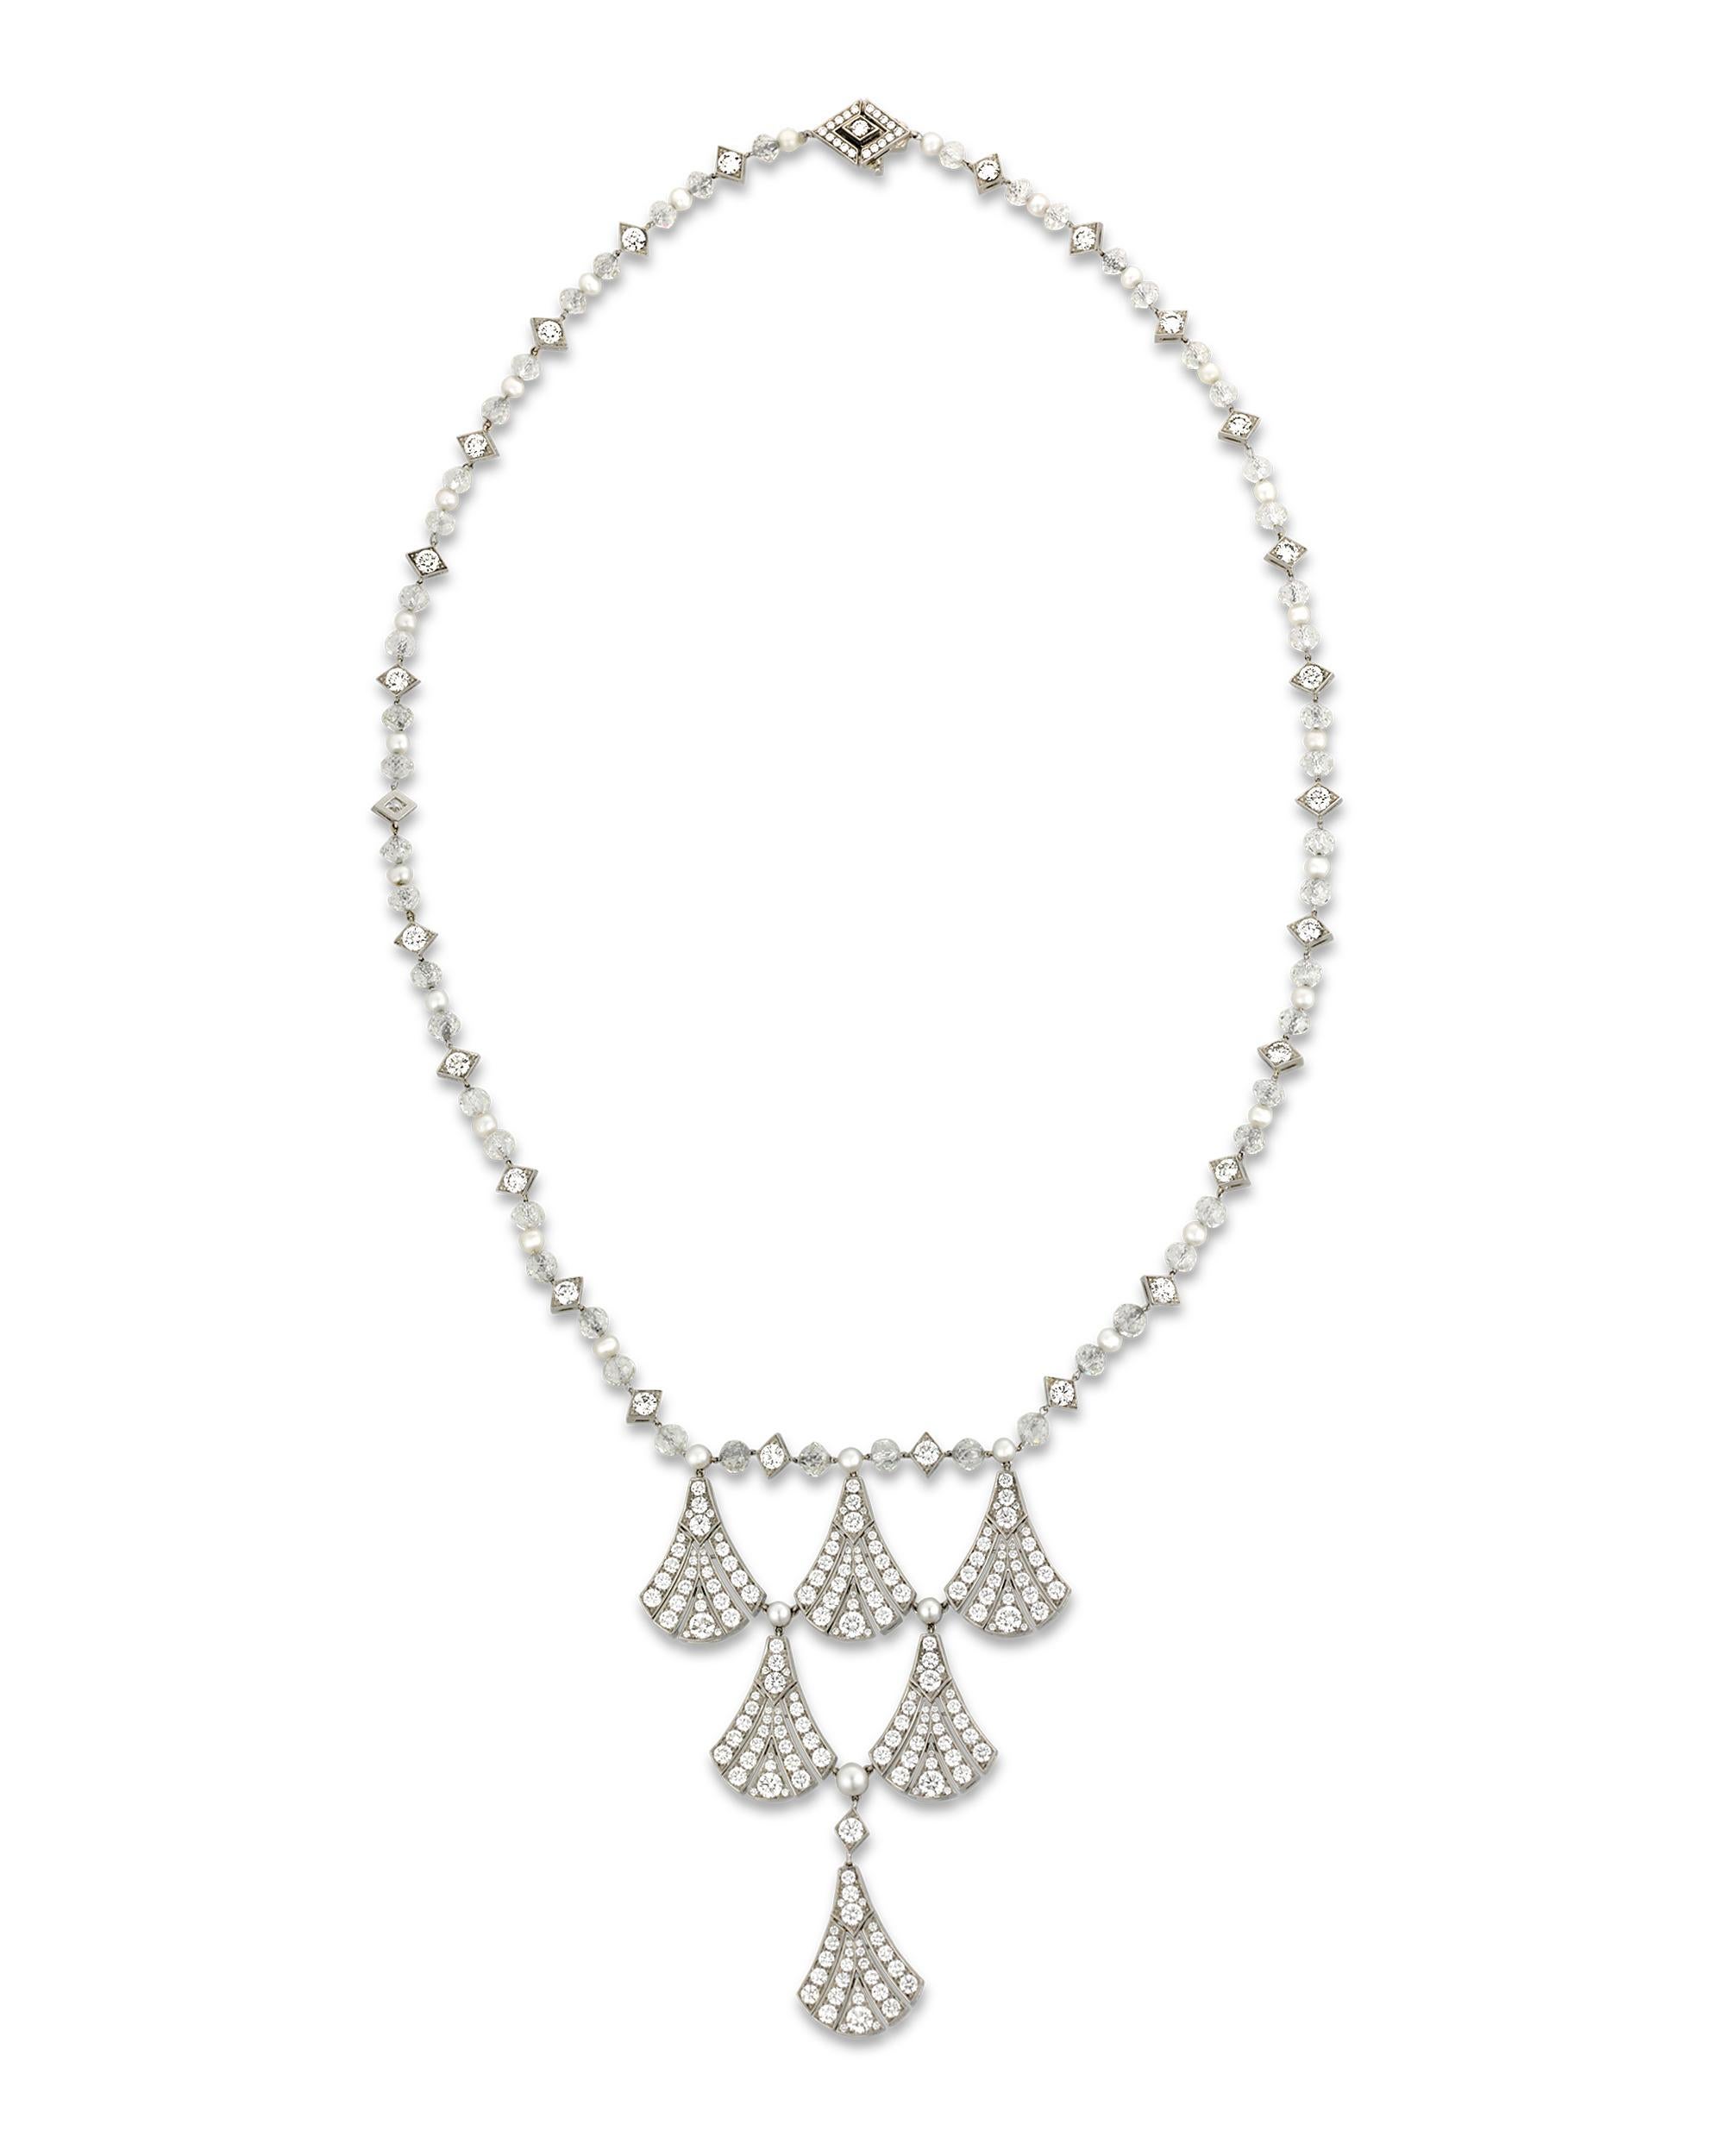 Six éventails incrustés de diamants sont suspendus à une chaîne de perles et de diamants dans cet élégant collier lavallière de Tiffany & Co. Des diamants ronds totalisant 11,59 carats composent les formes en éventail tandis que des perles de